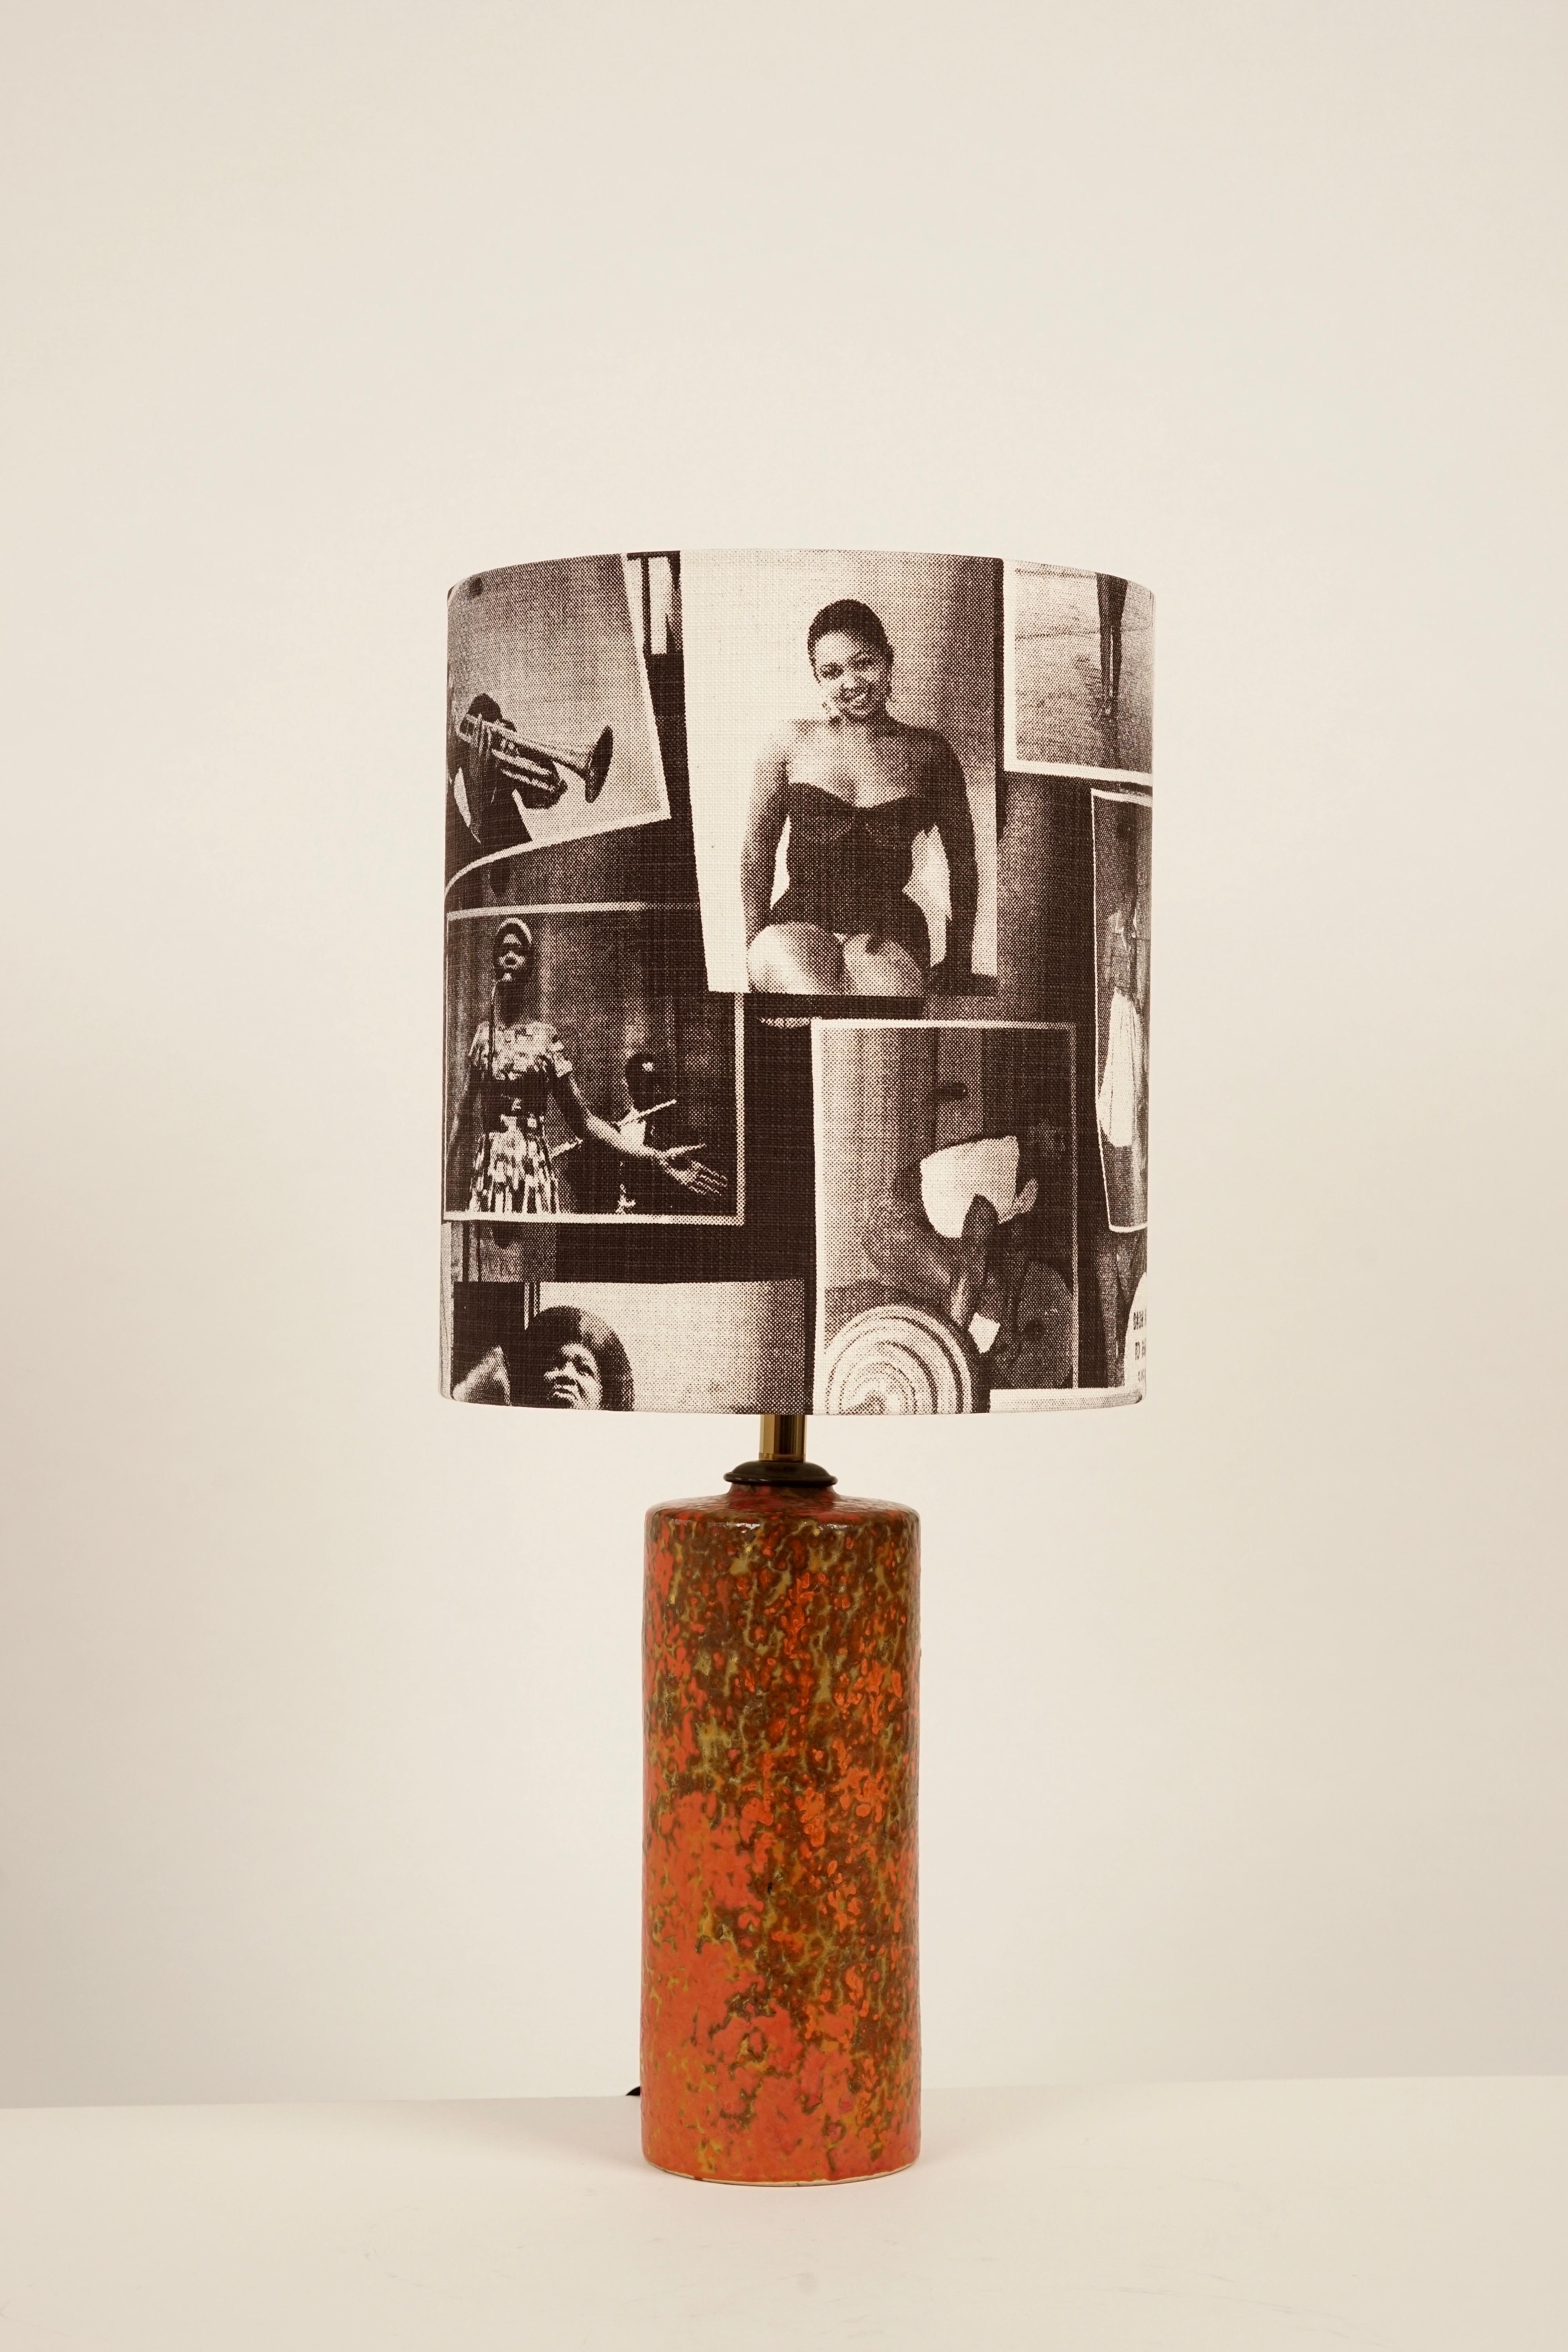 La base de la lampe provient du studio de céramique hongrois, époque 1950. La céramique formée à la main est vitrifiée en orange.
L'abat-jour a été récupéré dans un tissu en coton avec des motifs du magazine Drum.